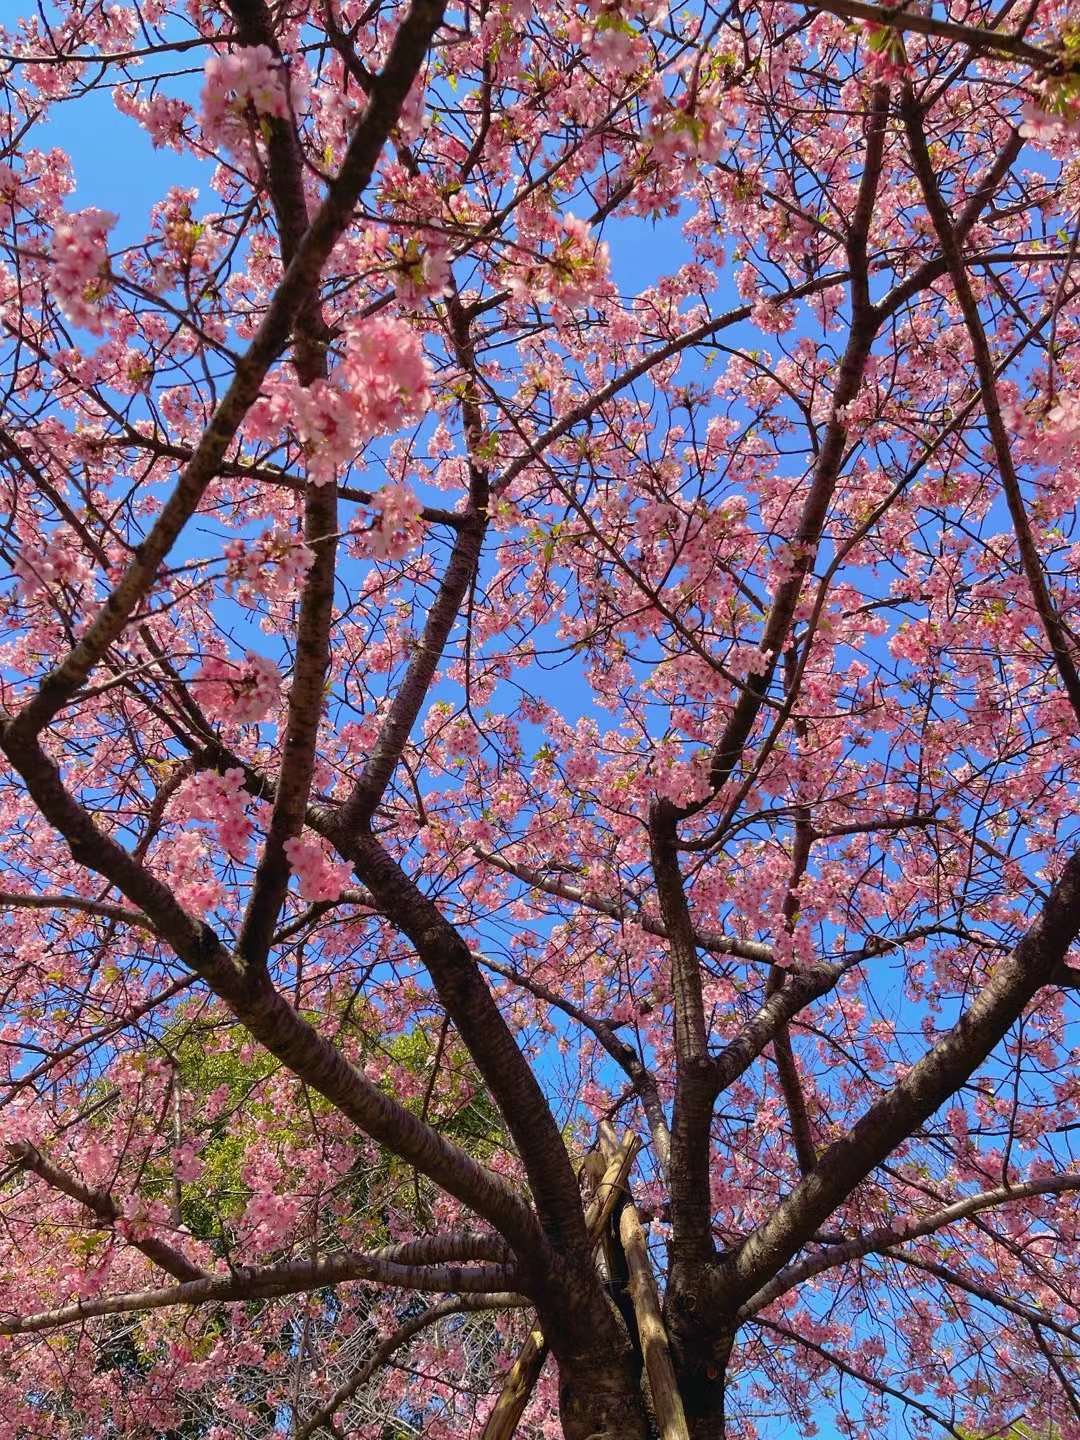 樱花树下,春意盎然,每一朵粉色的花瓣都柔软得如同云朵